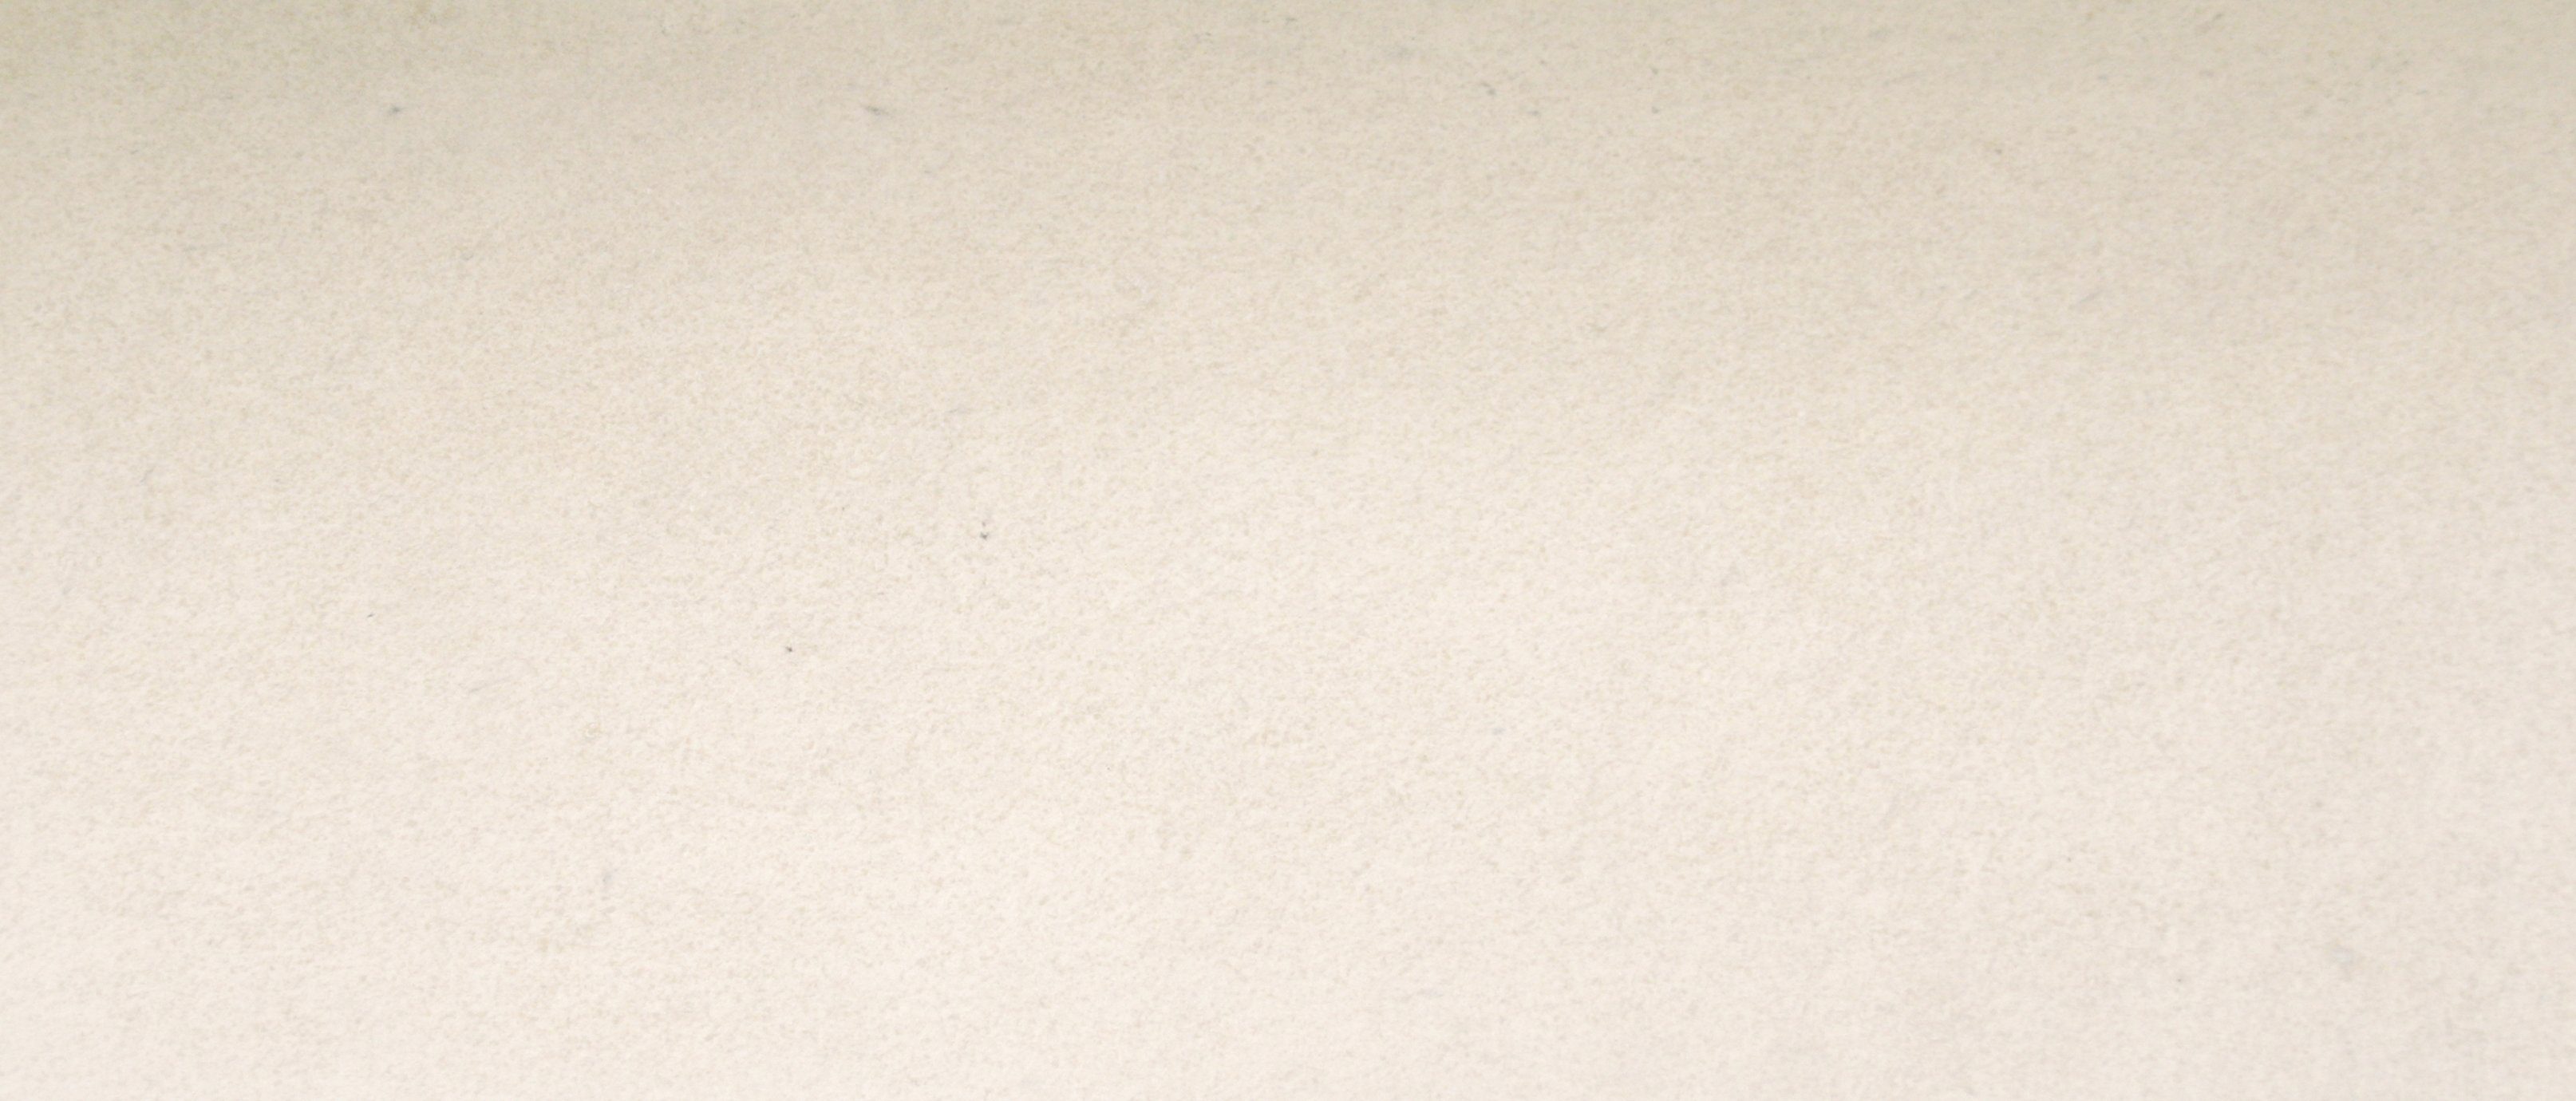 Slate Lite Dekorpaneele Clear White SL, BxL: 61x122 cm, 0,74 qm, (1-tlg) aus Echtstein